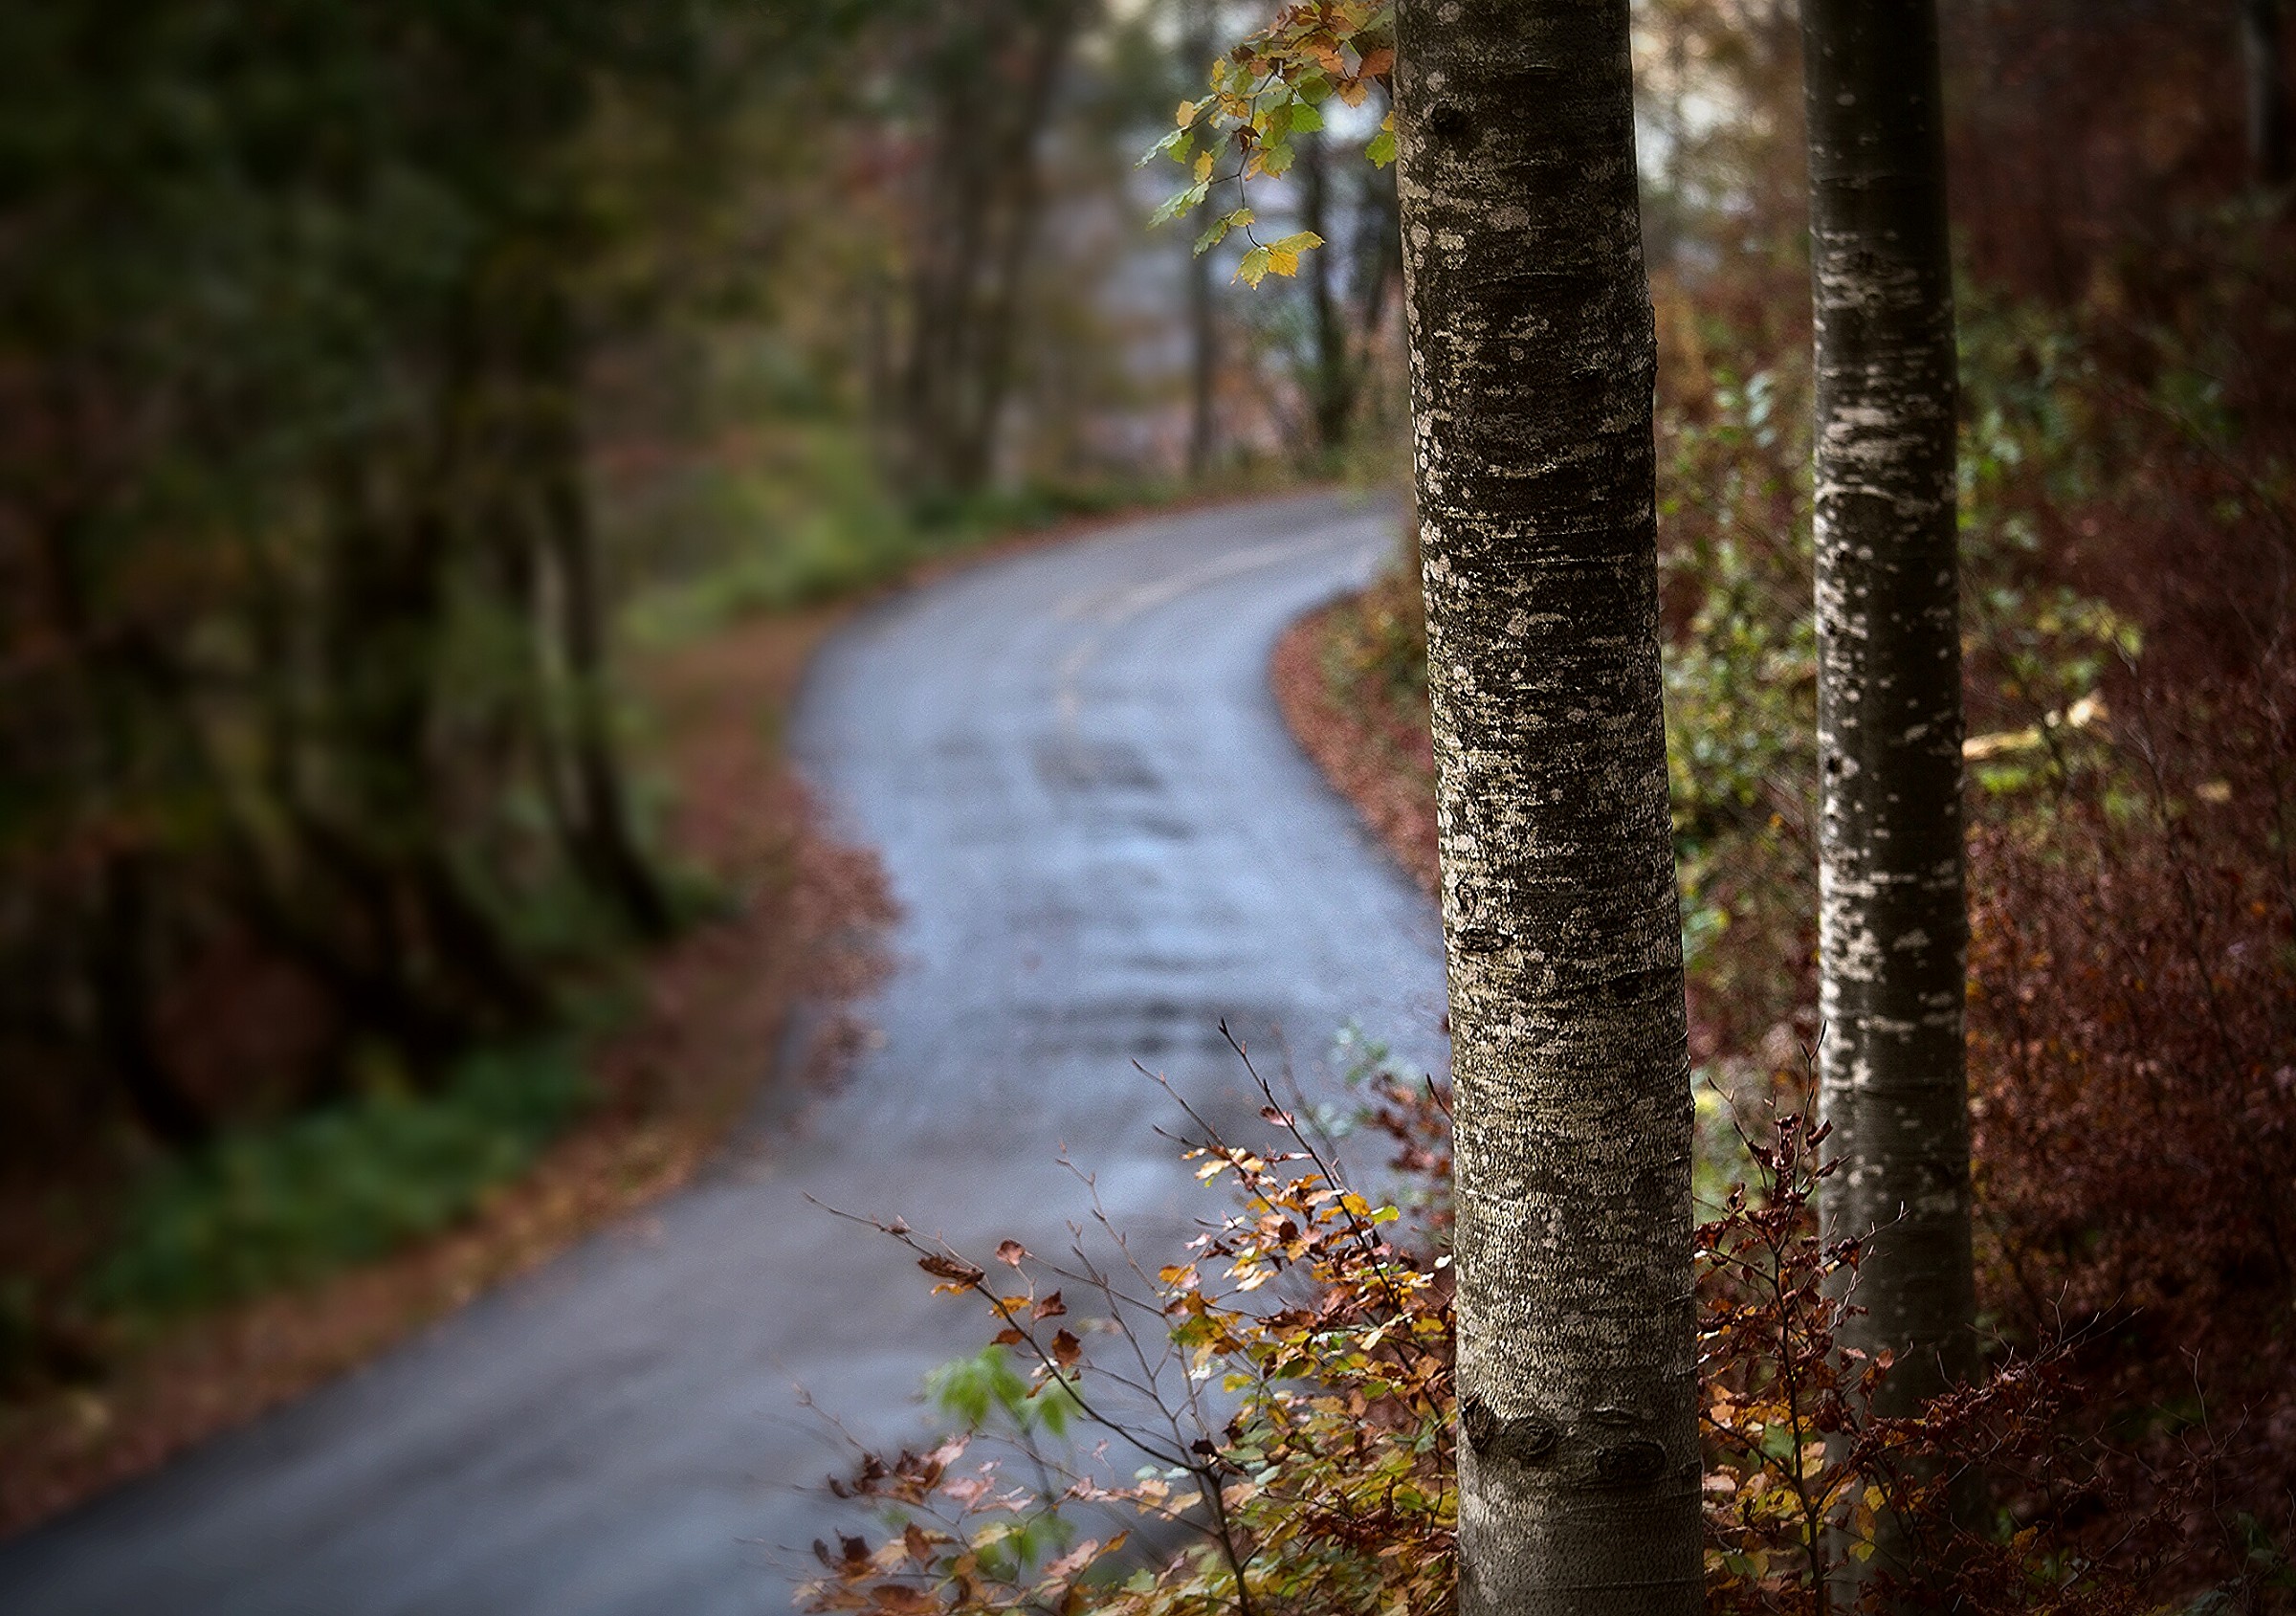 autumn road...